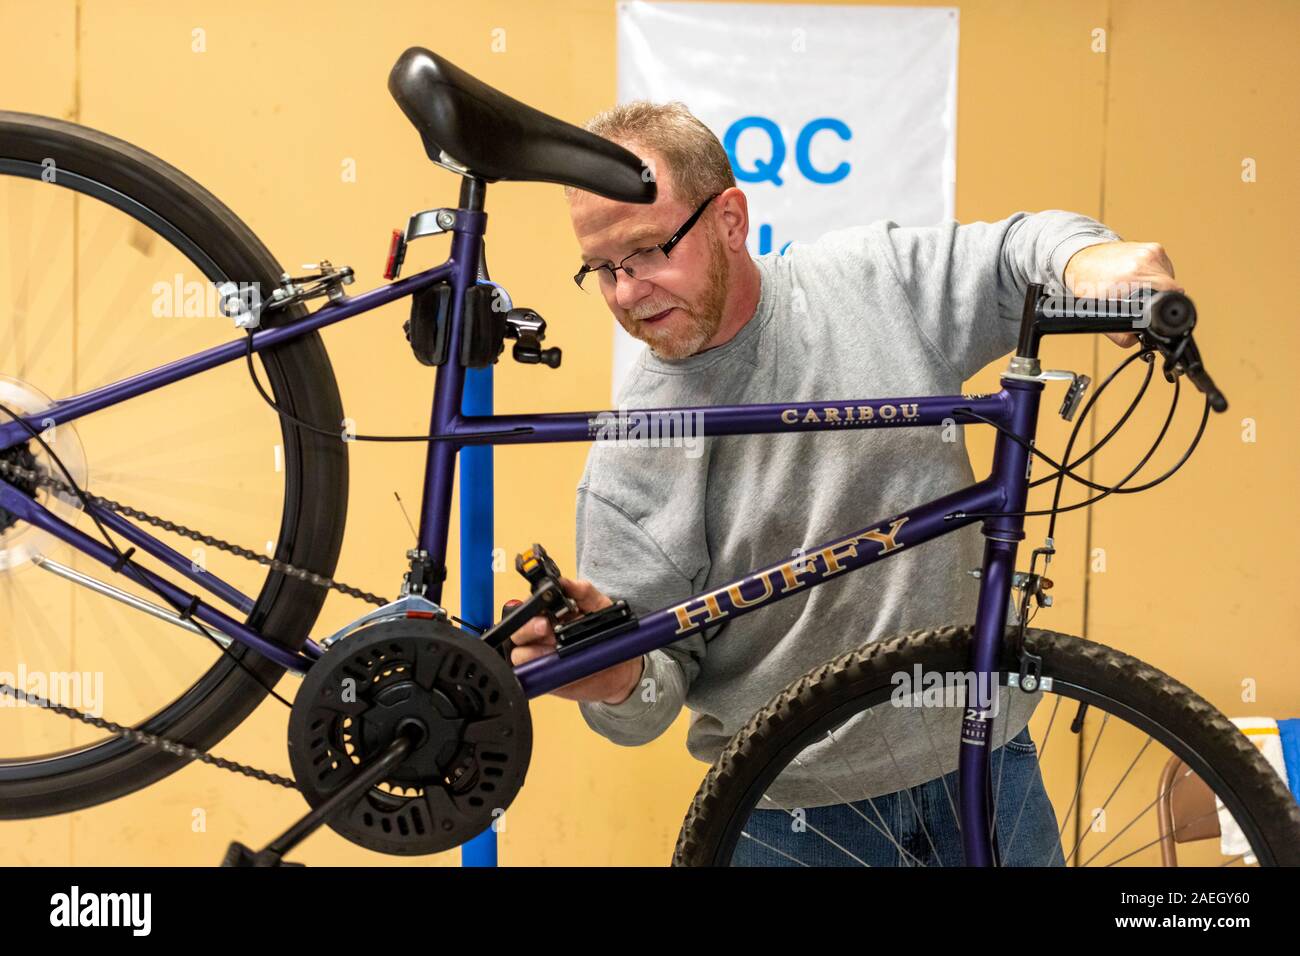 Detroit, Michigan - un homme fait un dernier contrôle de qualité sur une bicyclette, l'un des milliers de vélos d'occasion que le prêt de vélos 4 Kidz recueille chaque année, r Banque D'Images